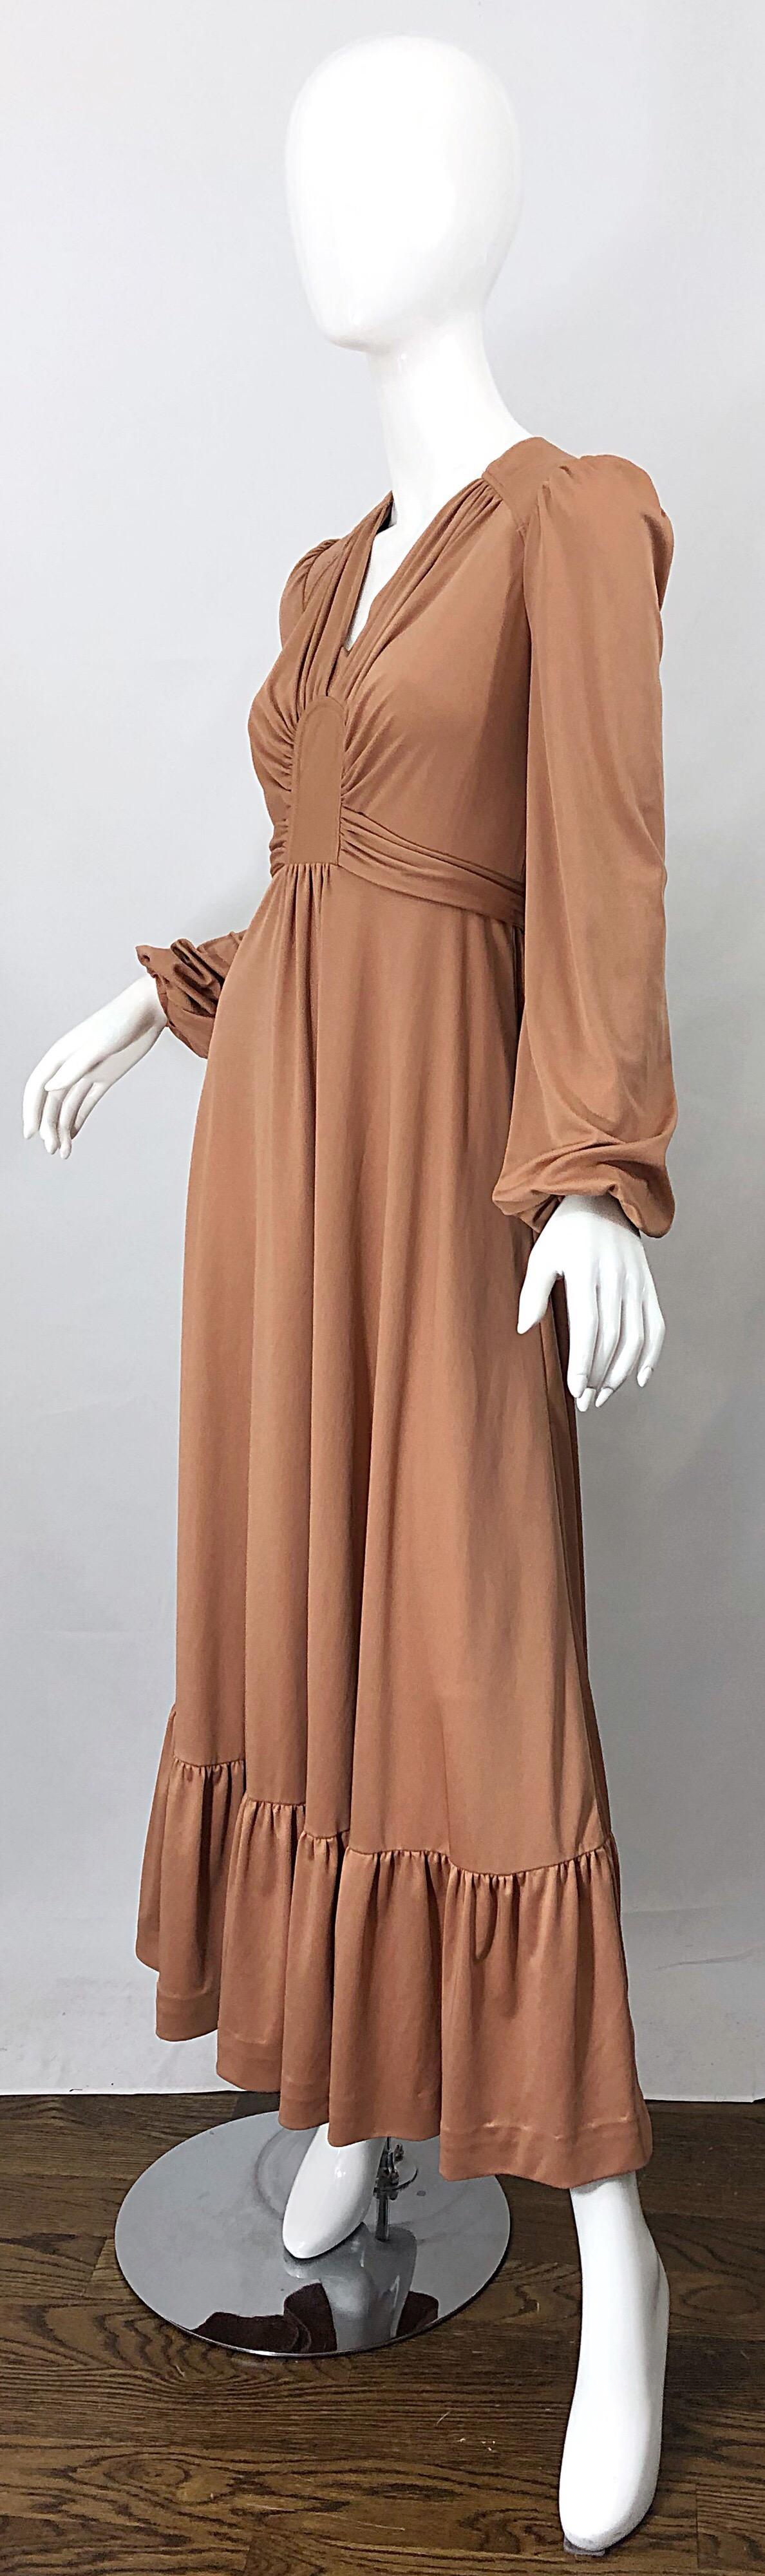 long sleeve tan dress